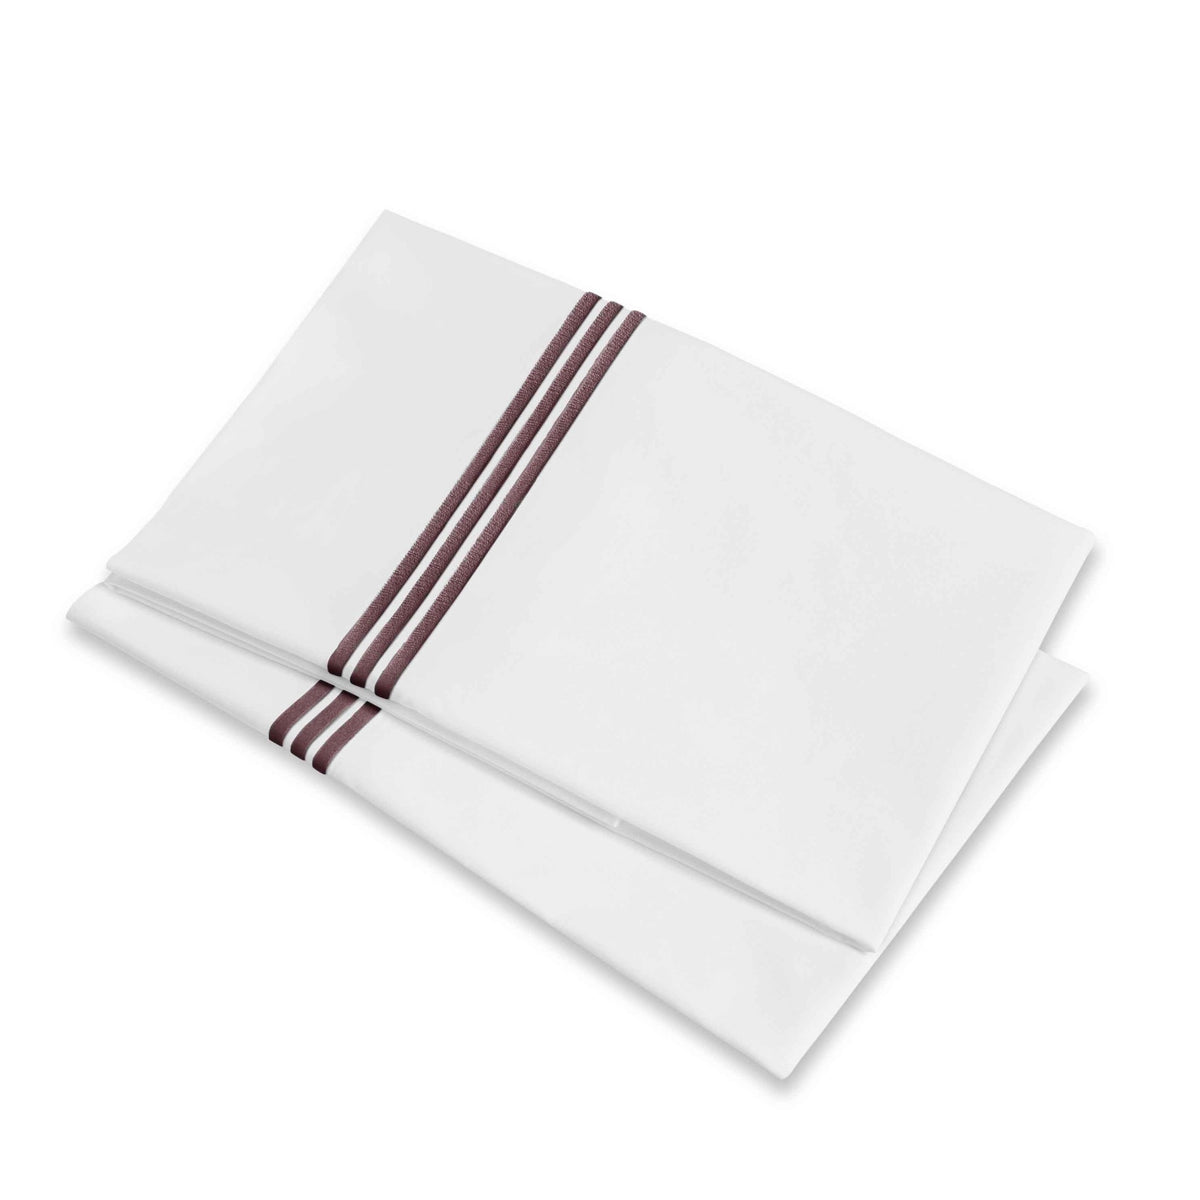 Folded Pillowcases of Signoria Platinum Percale Bedding in White/Plum Color